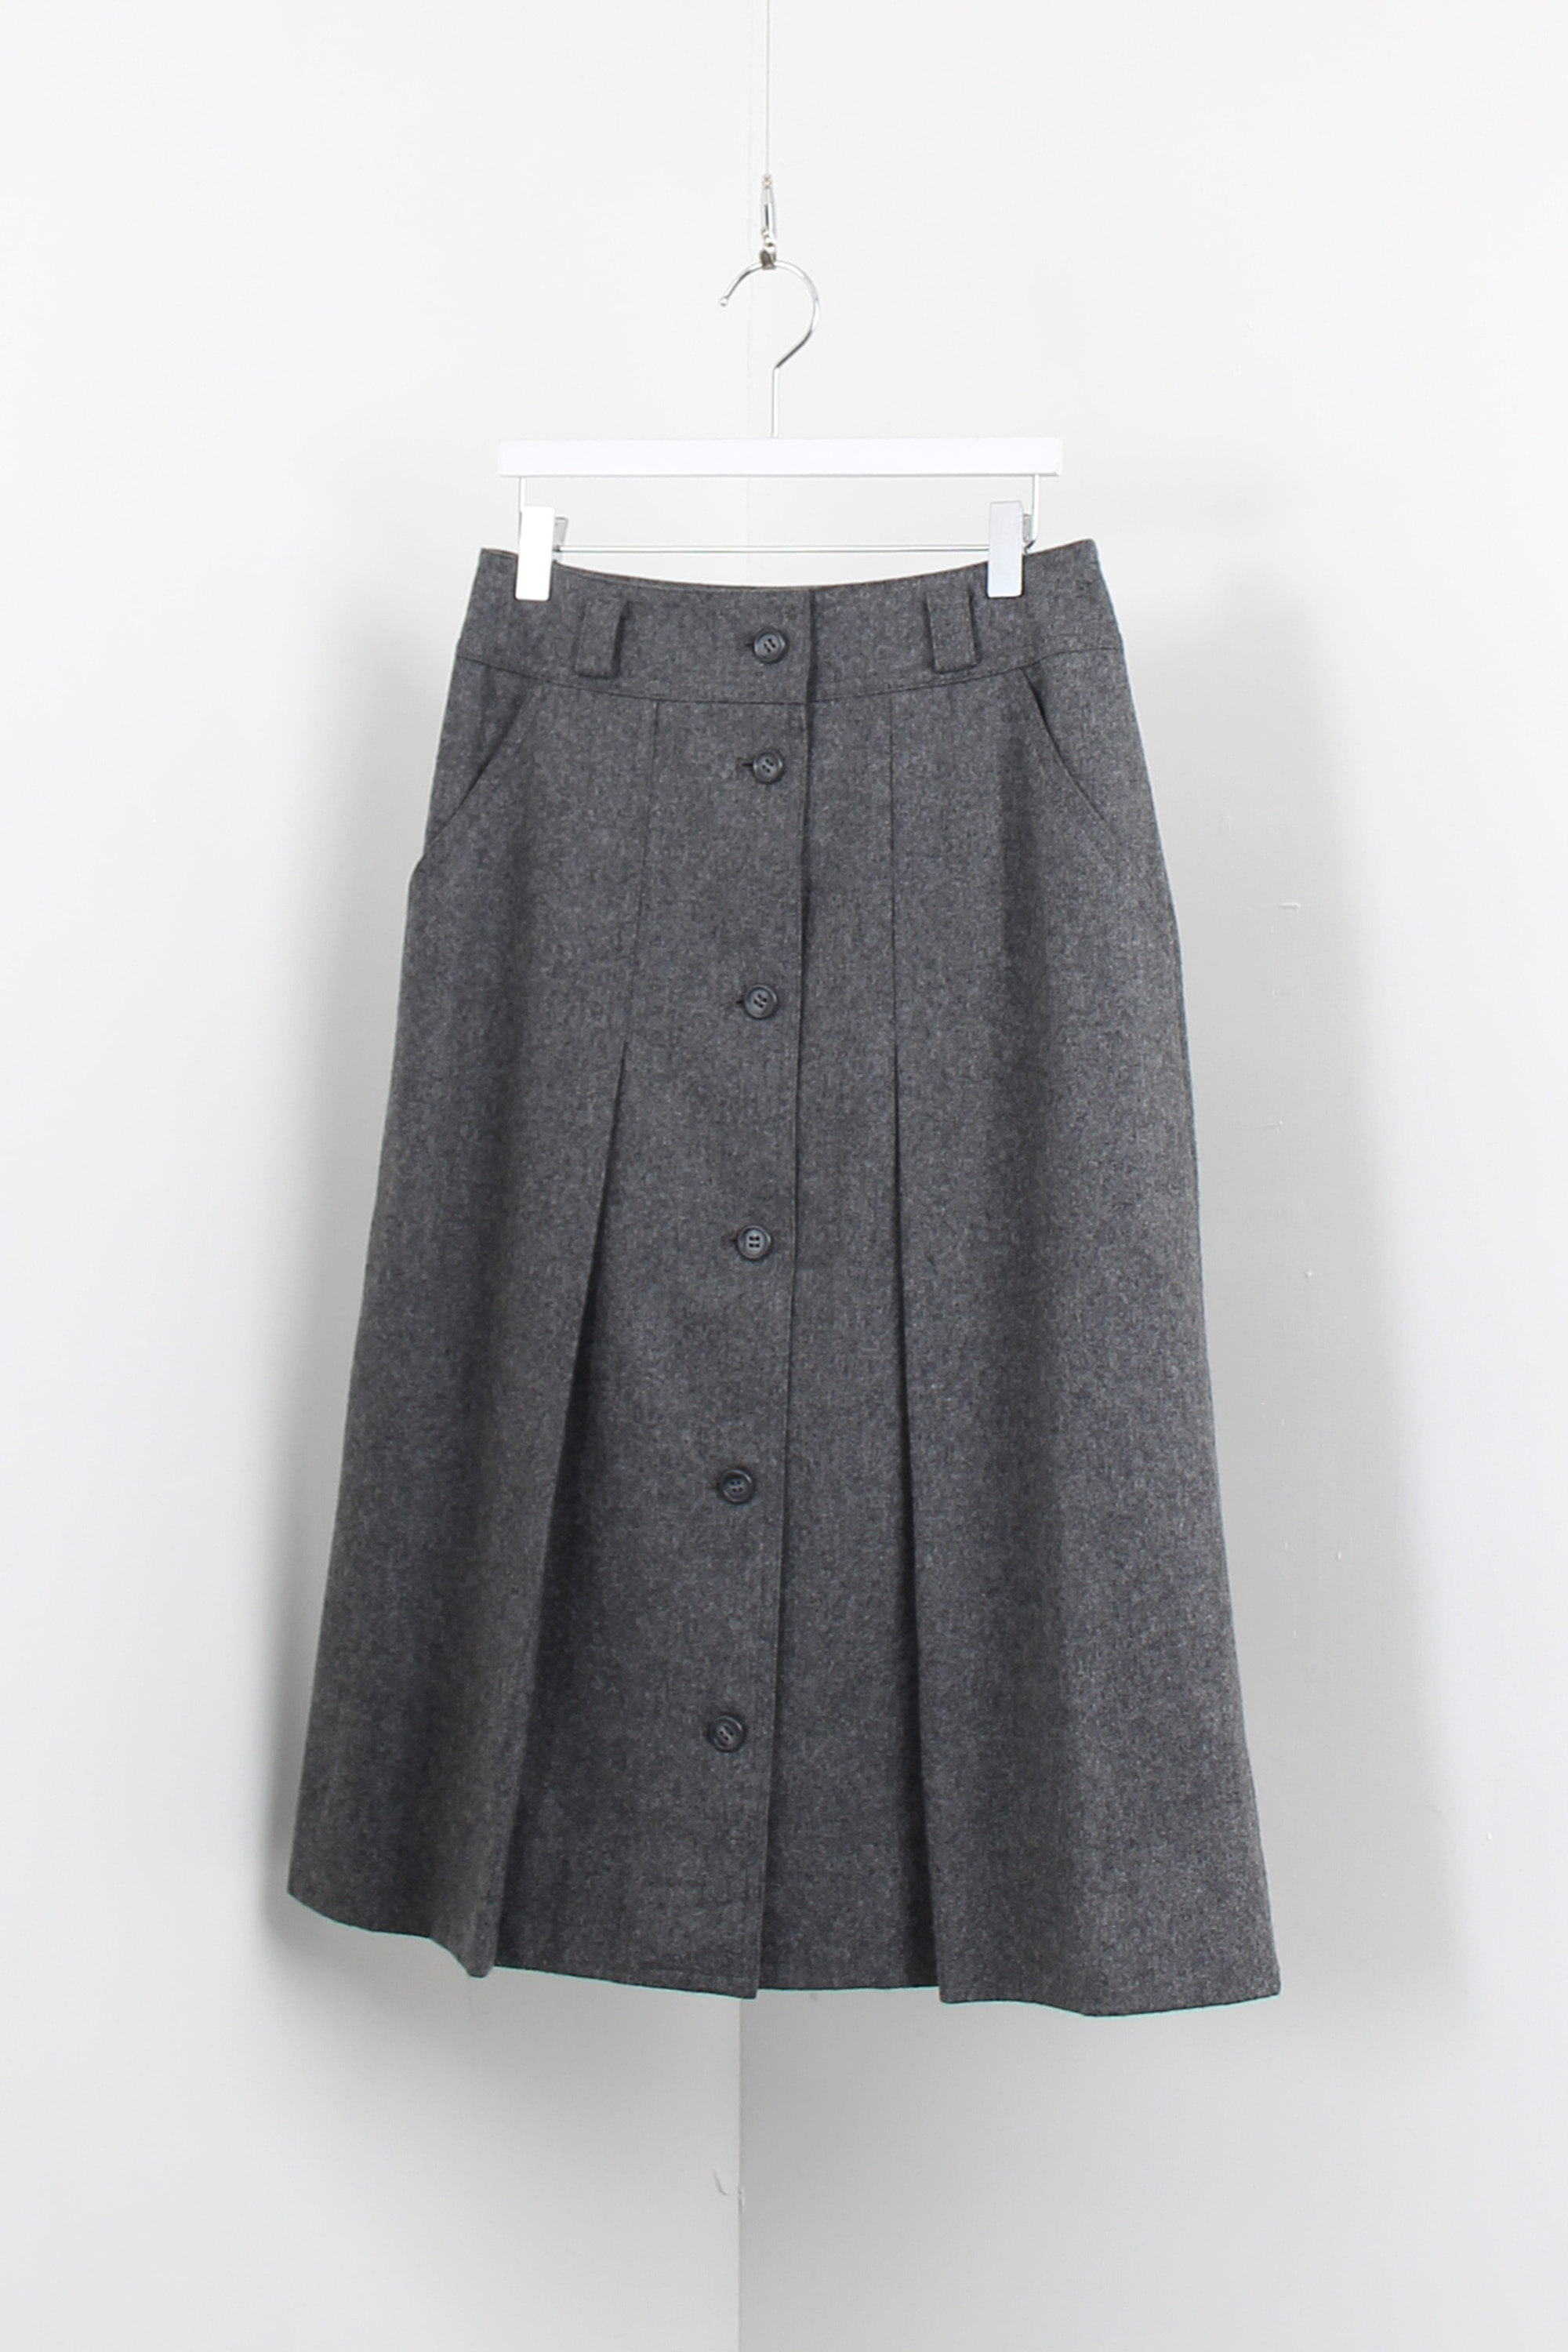 vintage pleats skirt